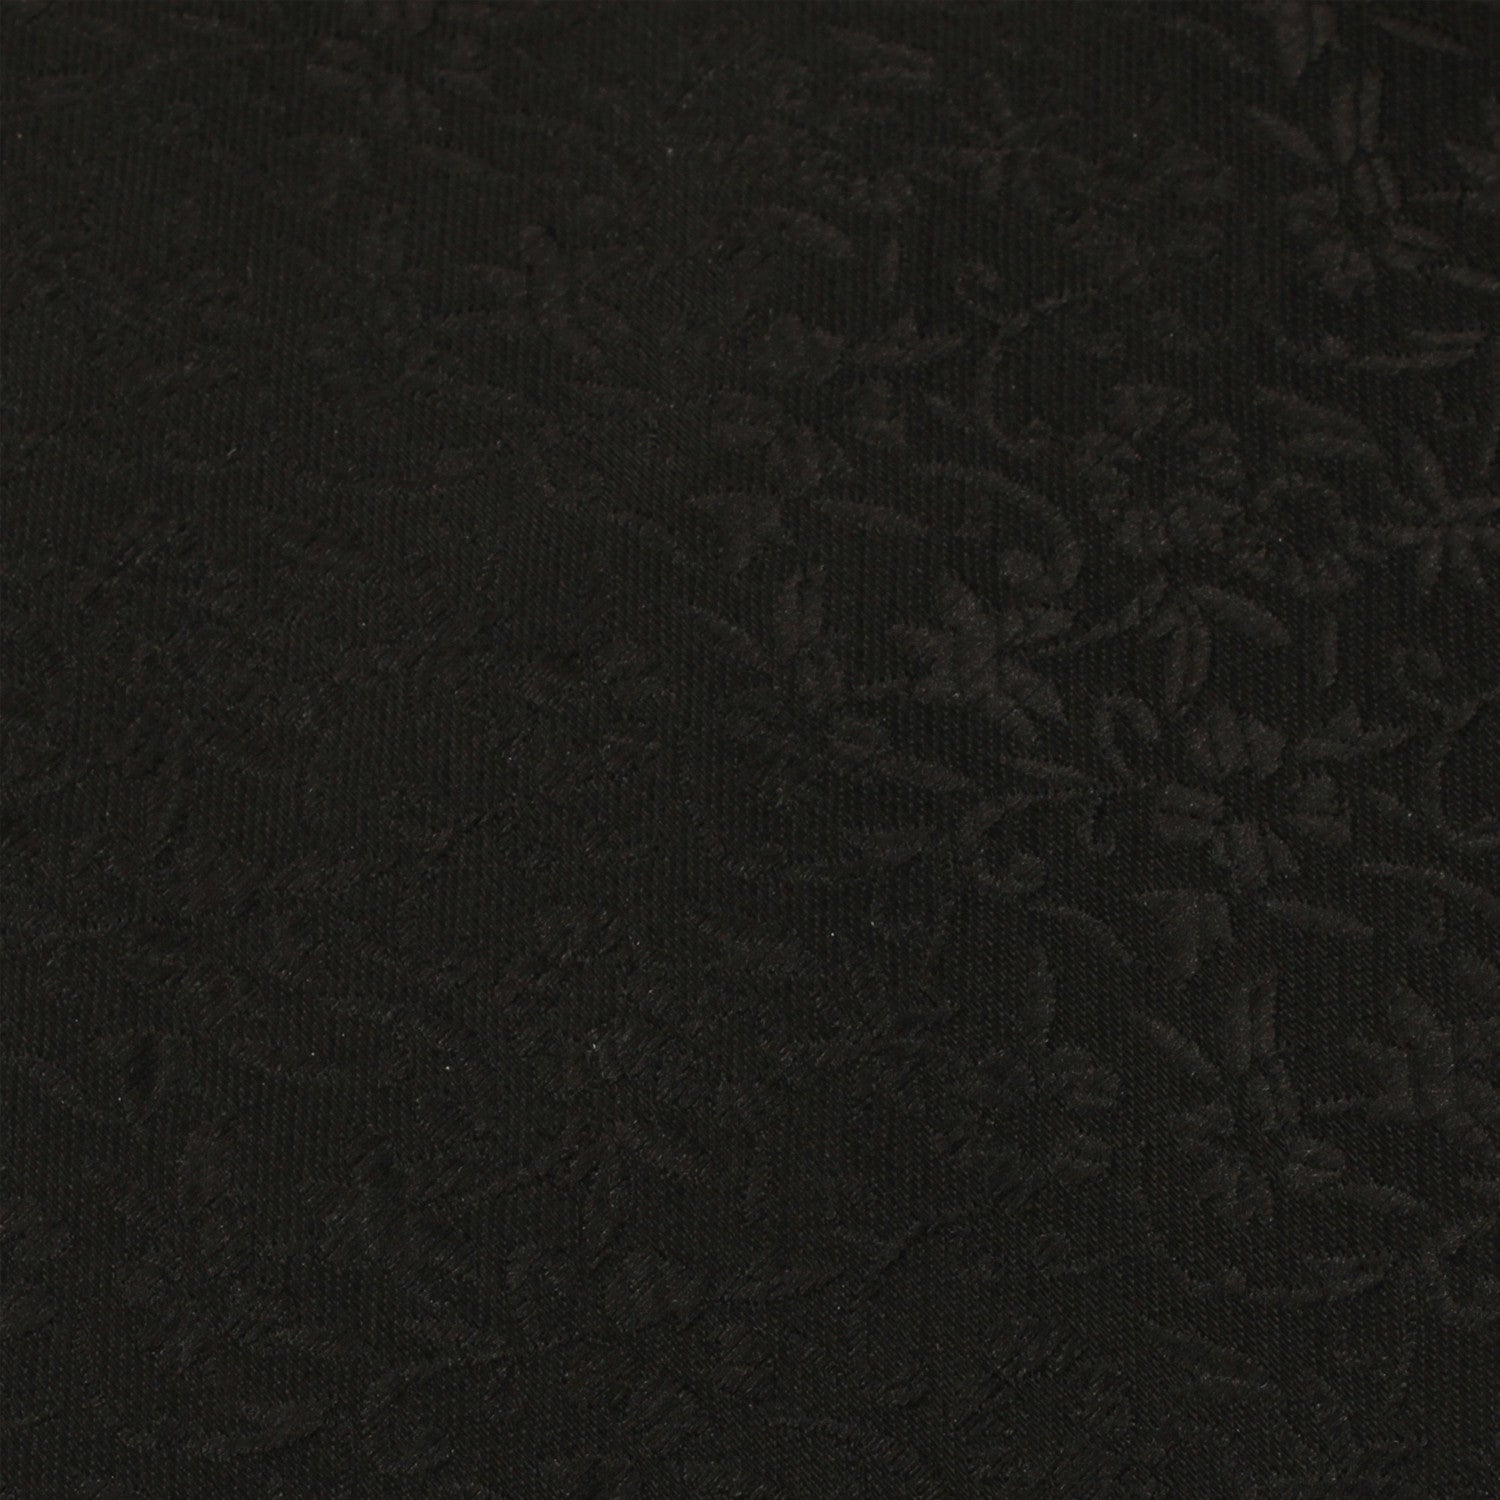 Black Floral Pattern Tie